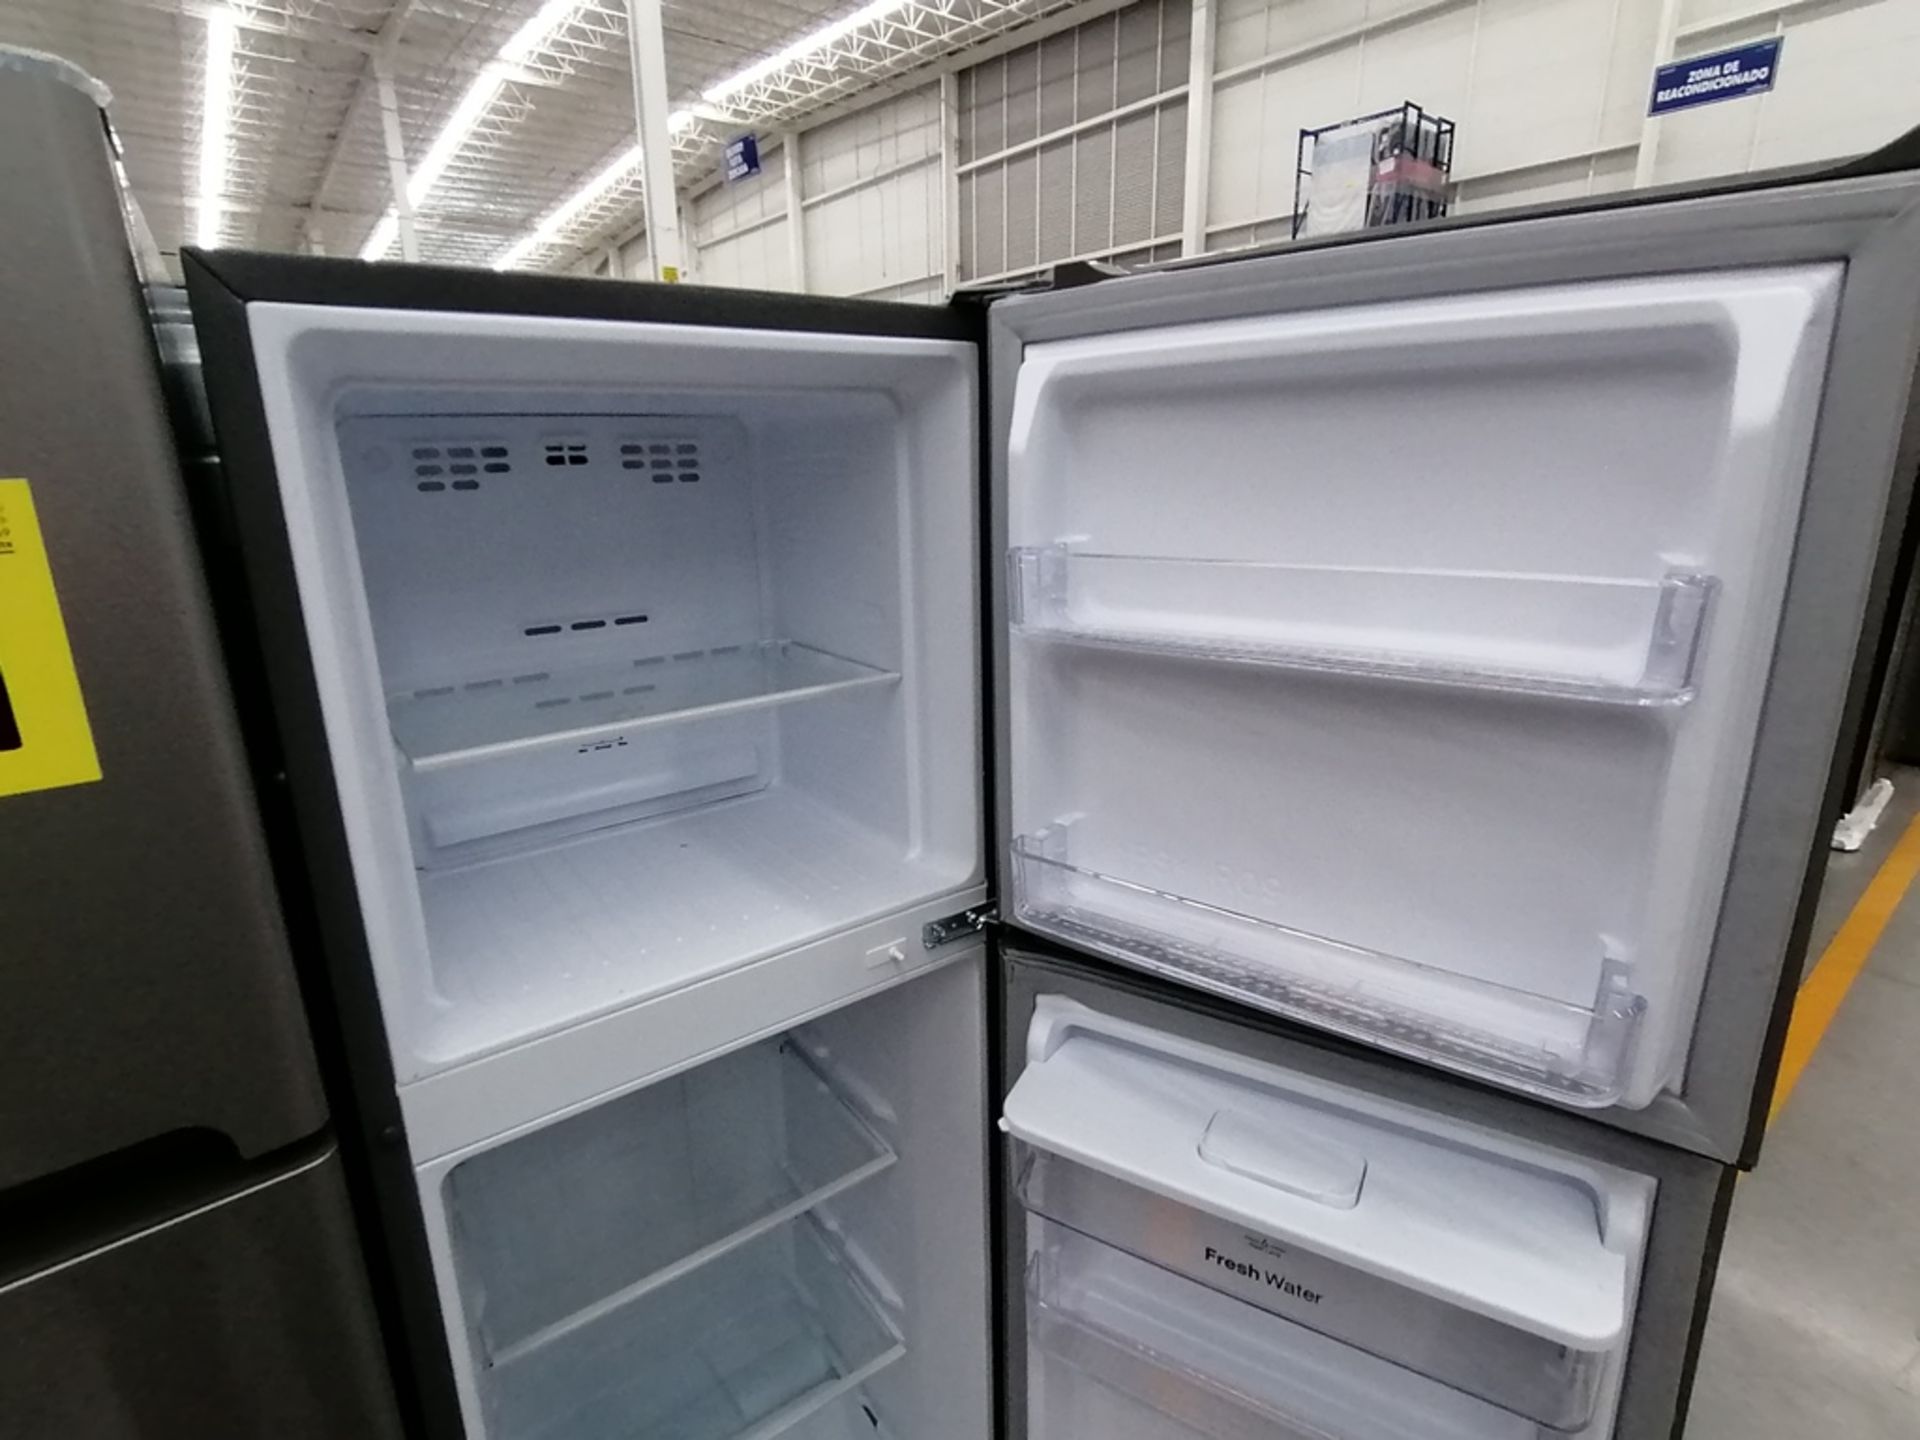 Lote de 2 Refrigeradores incluye: 1 Refrigerador con dispensador de agua, Marca Winia, Modelo DFR32 - Image 4 of 15